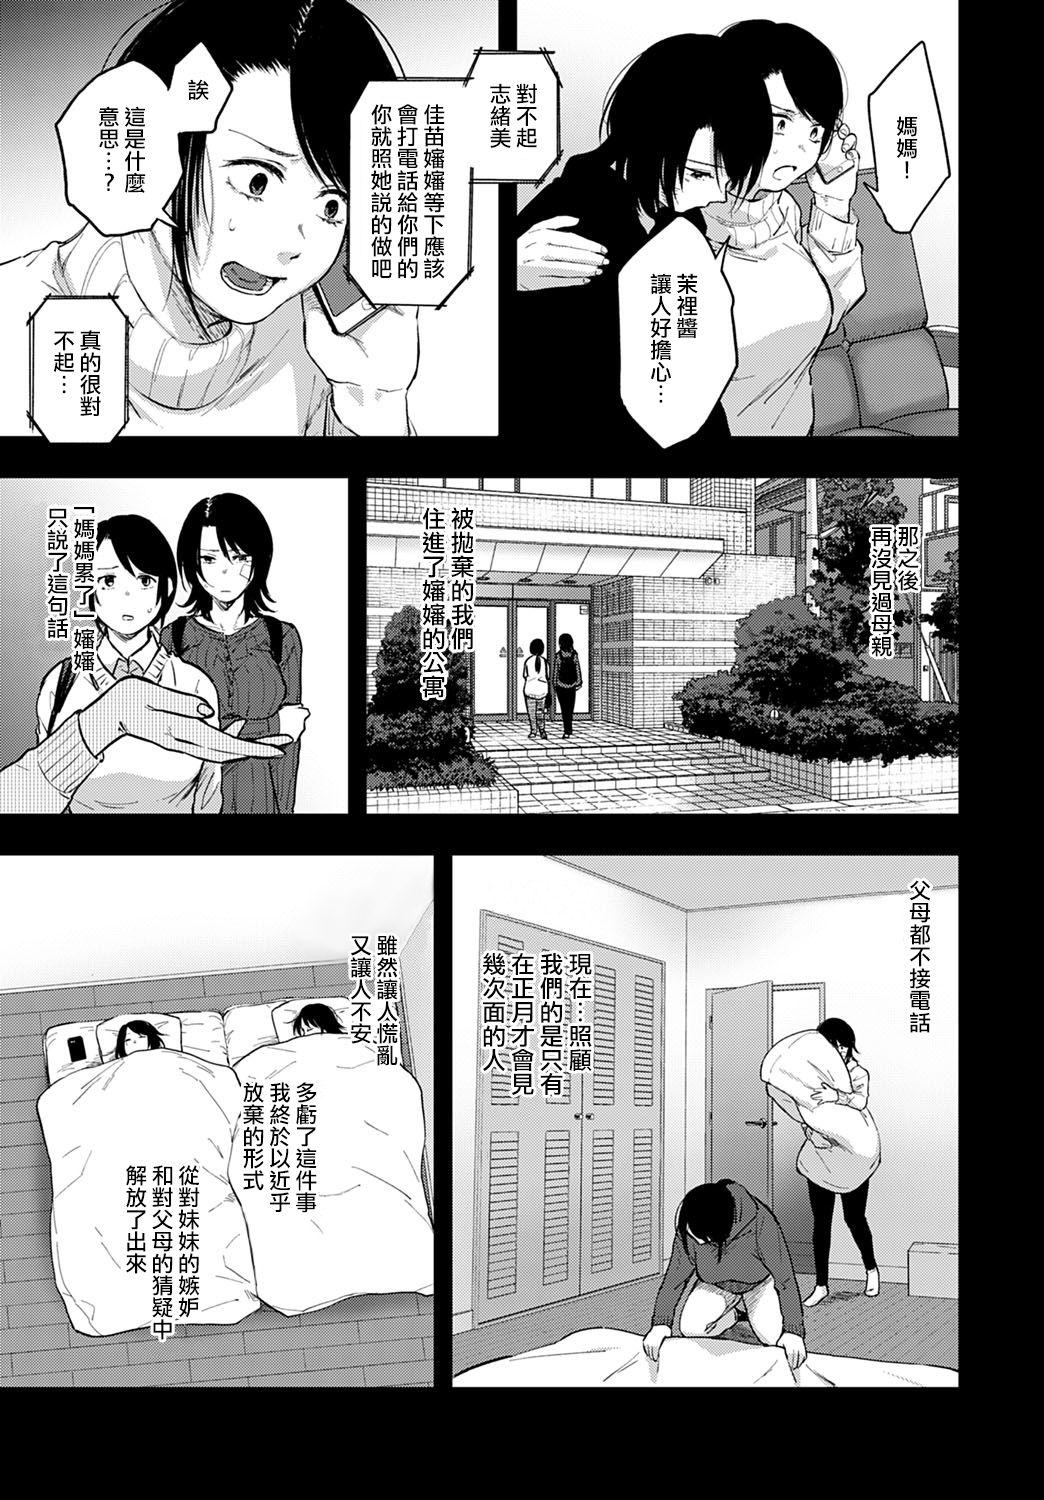 Rica Miyakowasure丨忘都草 Motel - Page 10